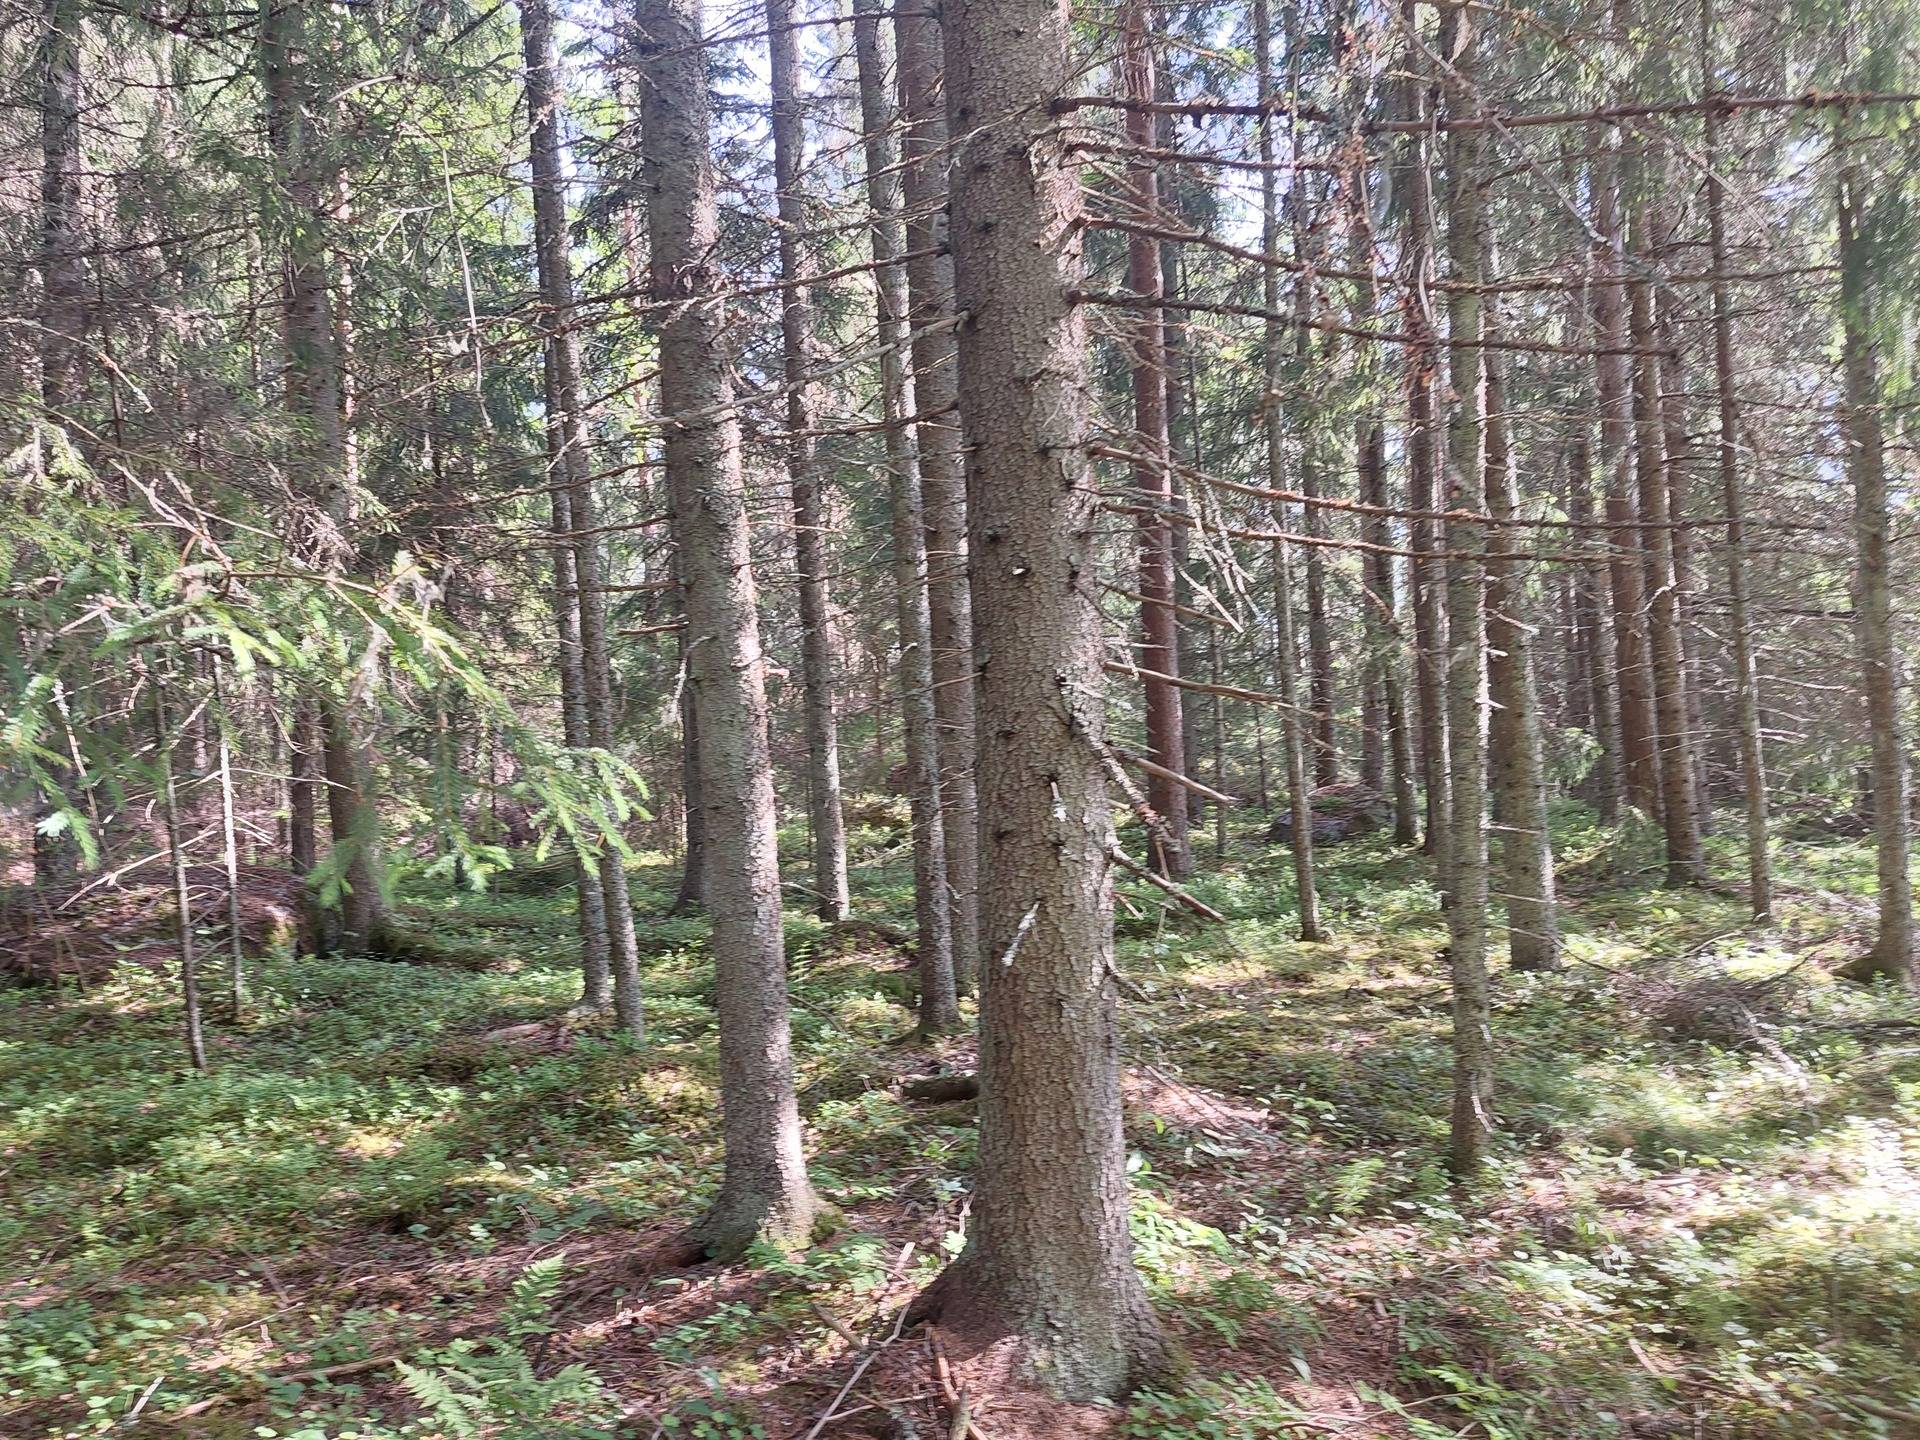 Omslagsbild för objektet Mäkelä 790-497-3-30 ja Satimo 790-506-1-58 maa-ja metsätilat Sastamalan Suodenniemellä